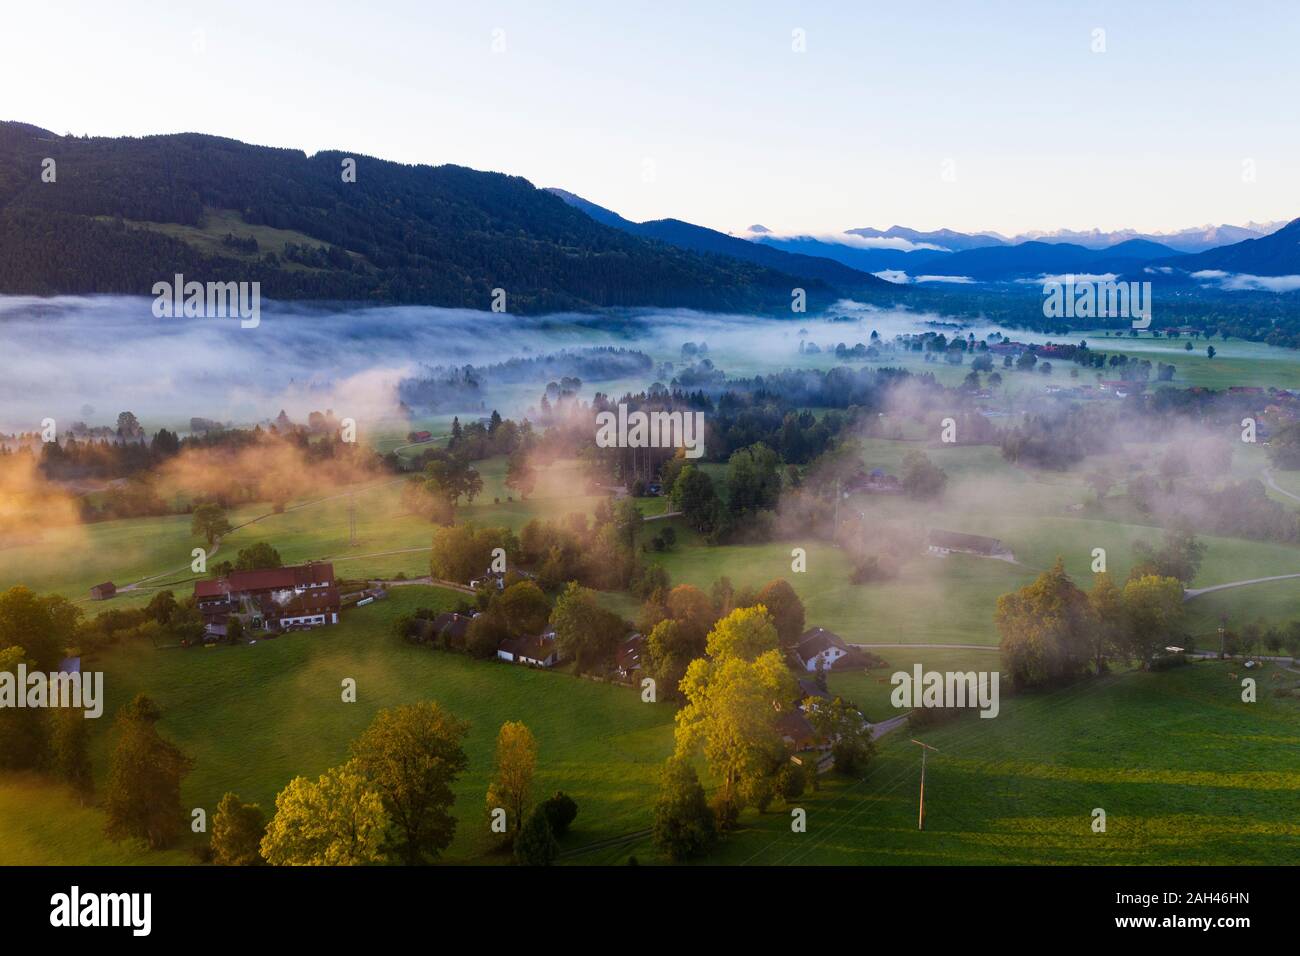 Alemania, Baviera, Gaissach superior, vista aérea de la niebla sobre el paisaje al amanecer. Foto de stock